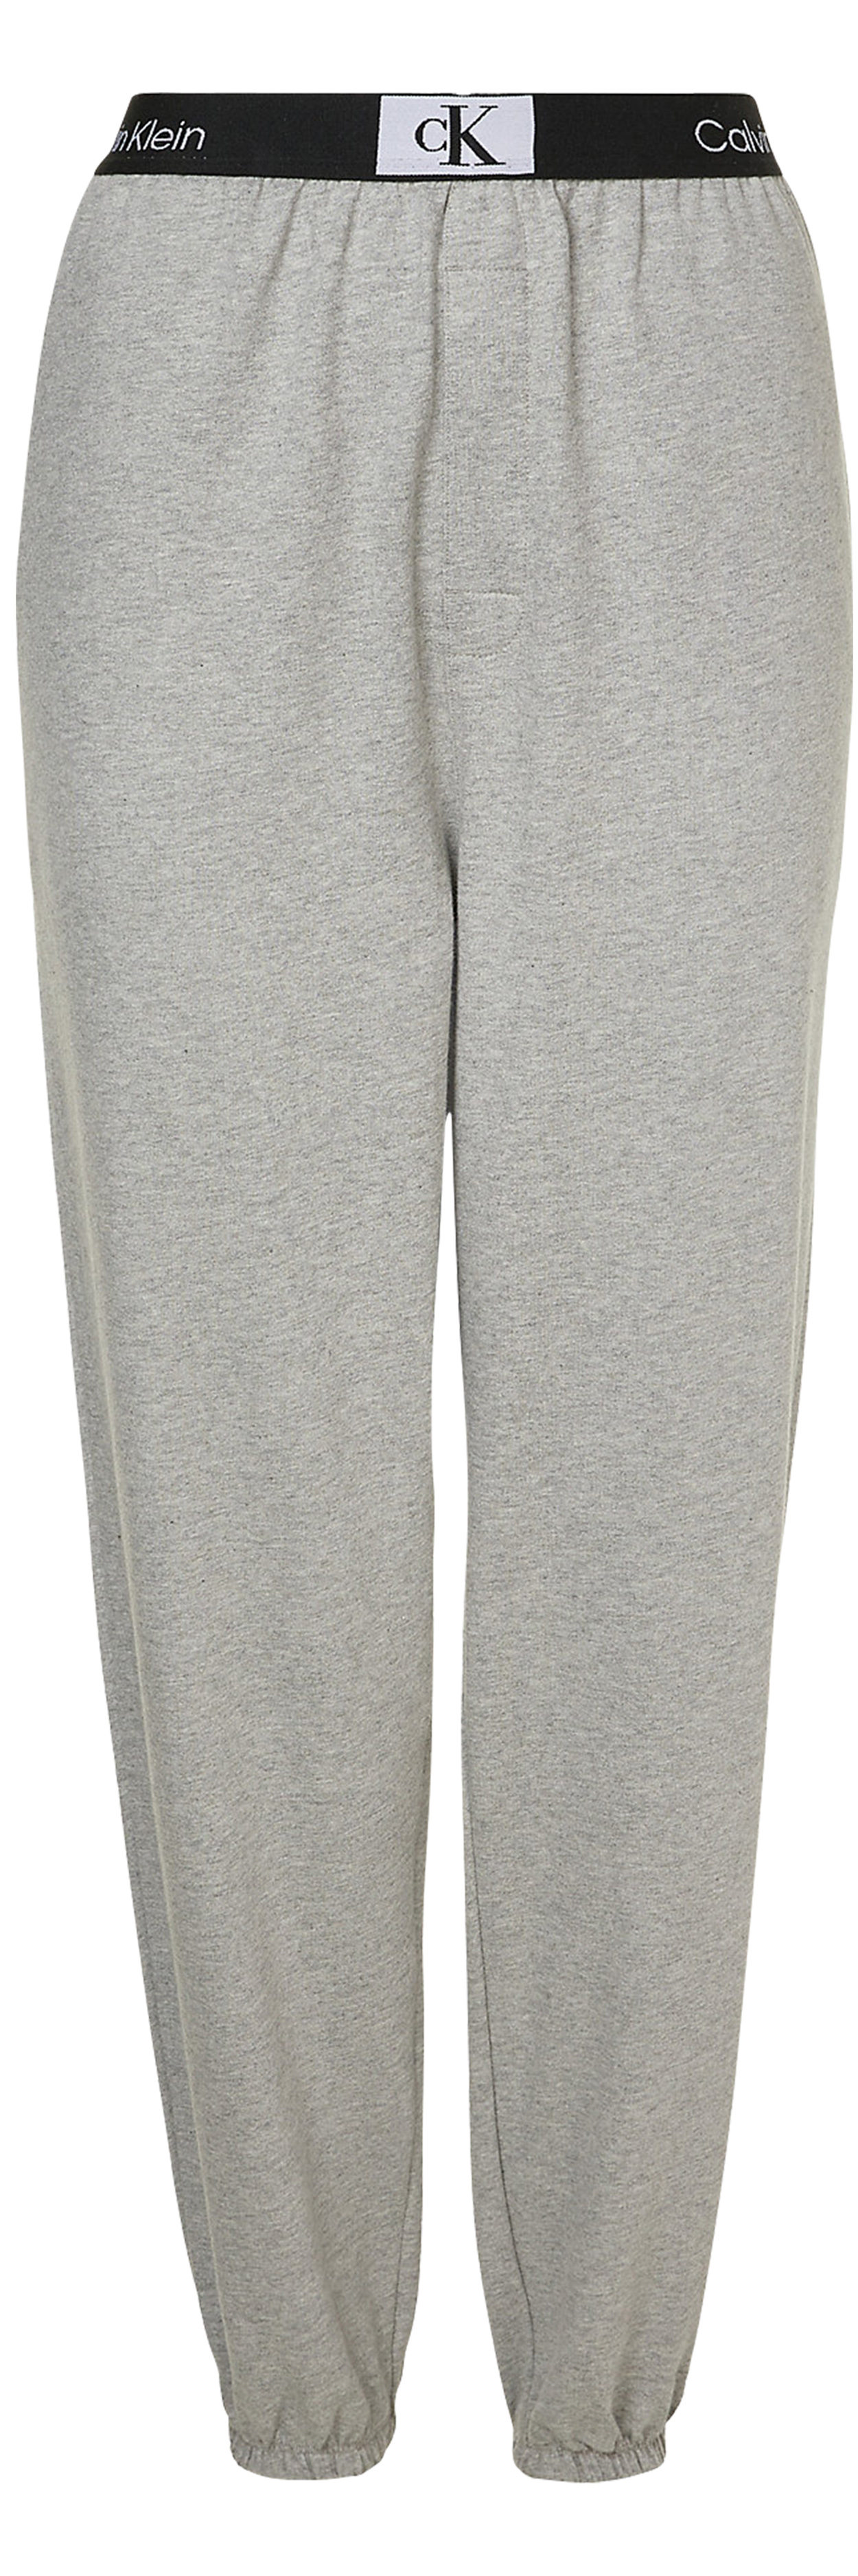 pantalon de pyjama calvin klein coton gris